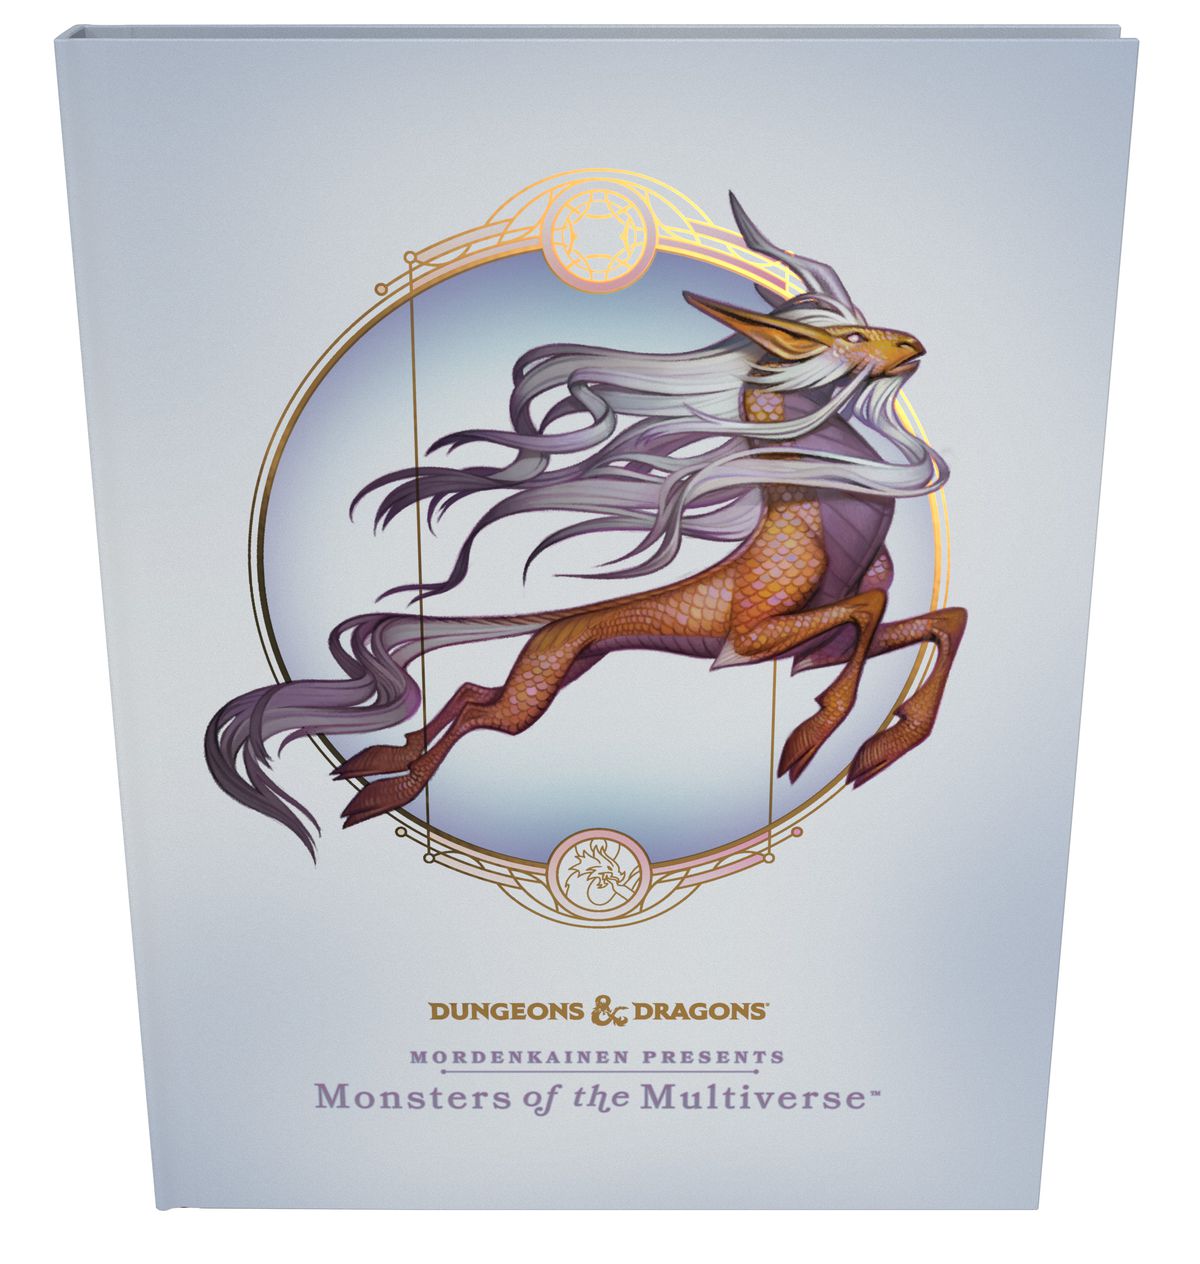 Copertina della Collector's Edition di Modenkainen's Monsters of the Multiverse, con sfondo bianco e lamina d'oro.